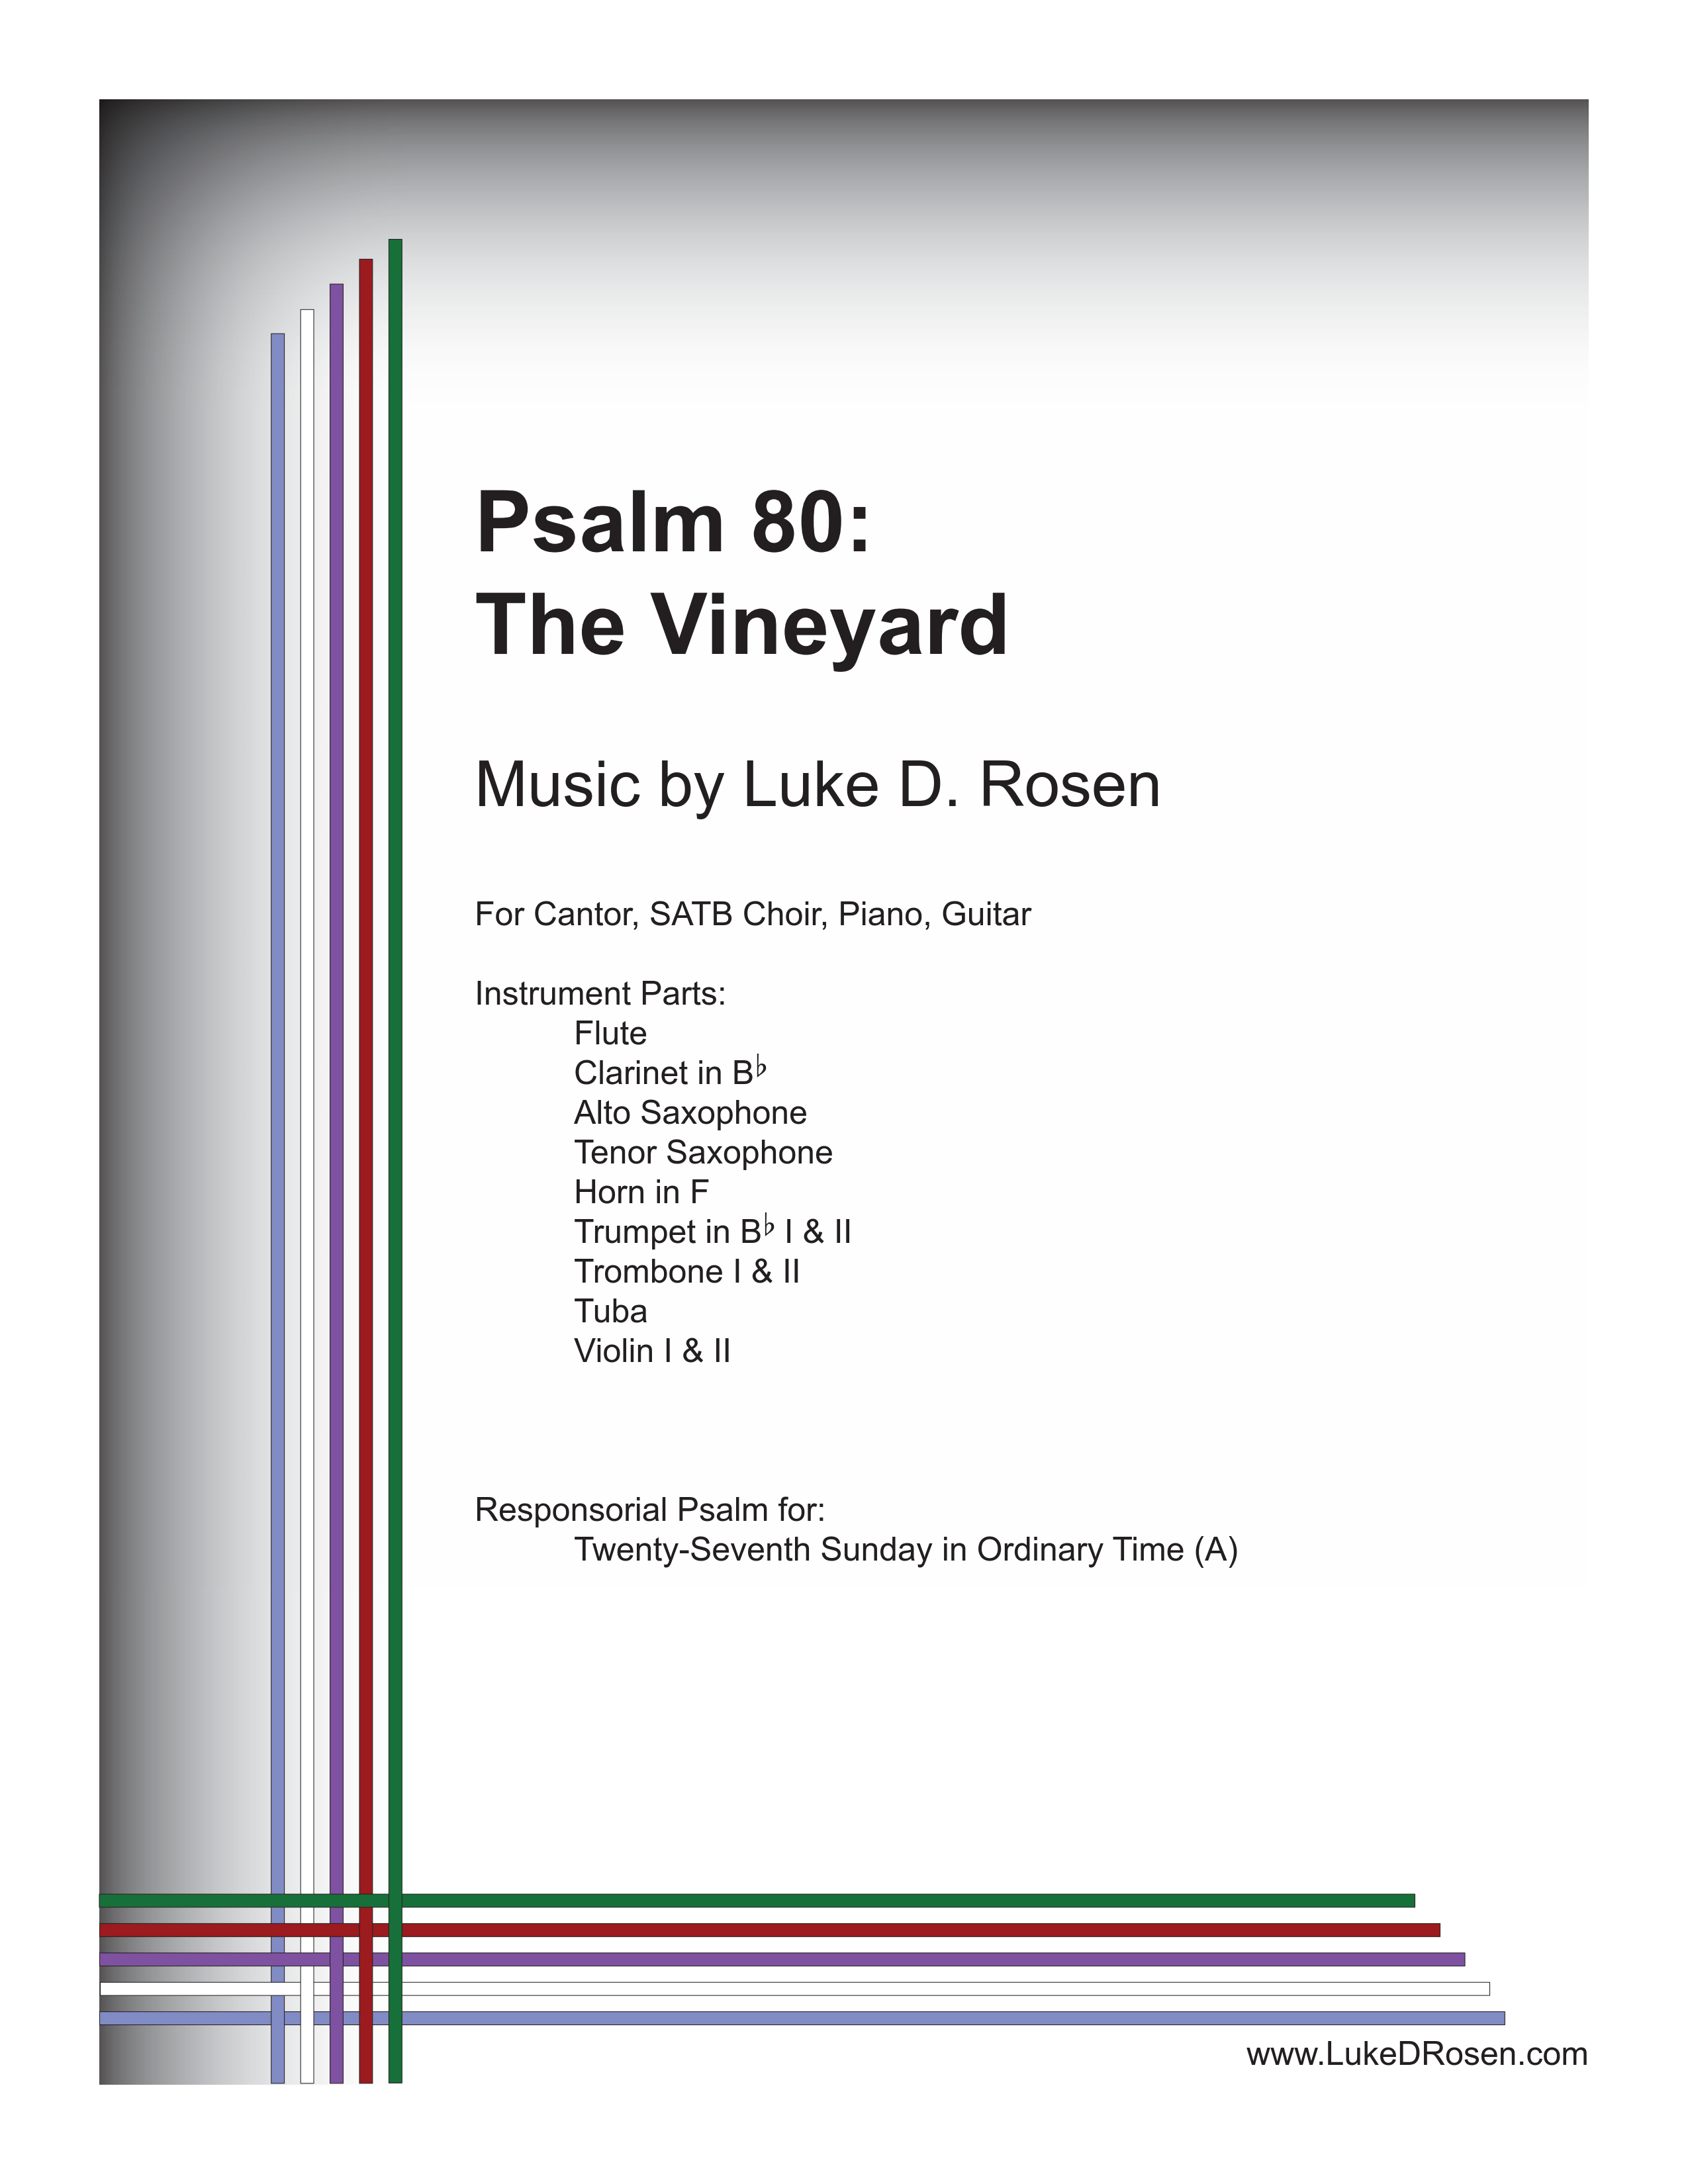 Psalm 80 – The Vineyard (Rosen)